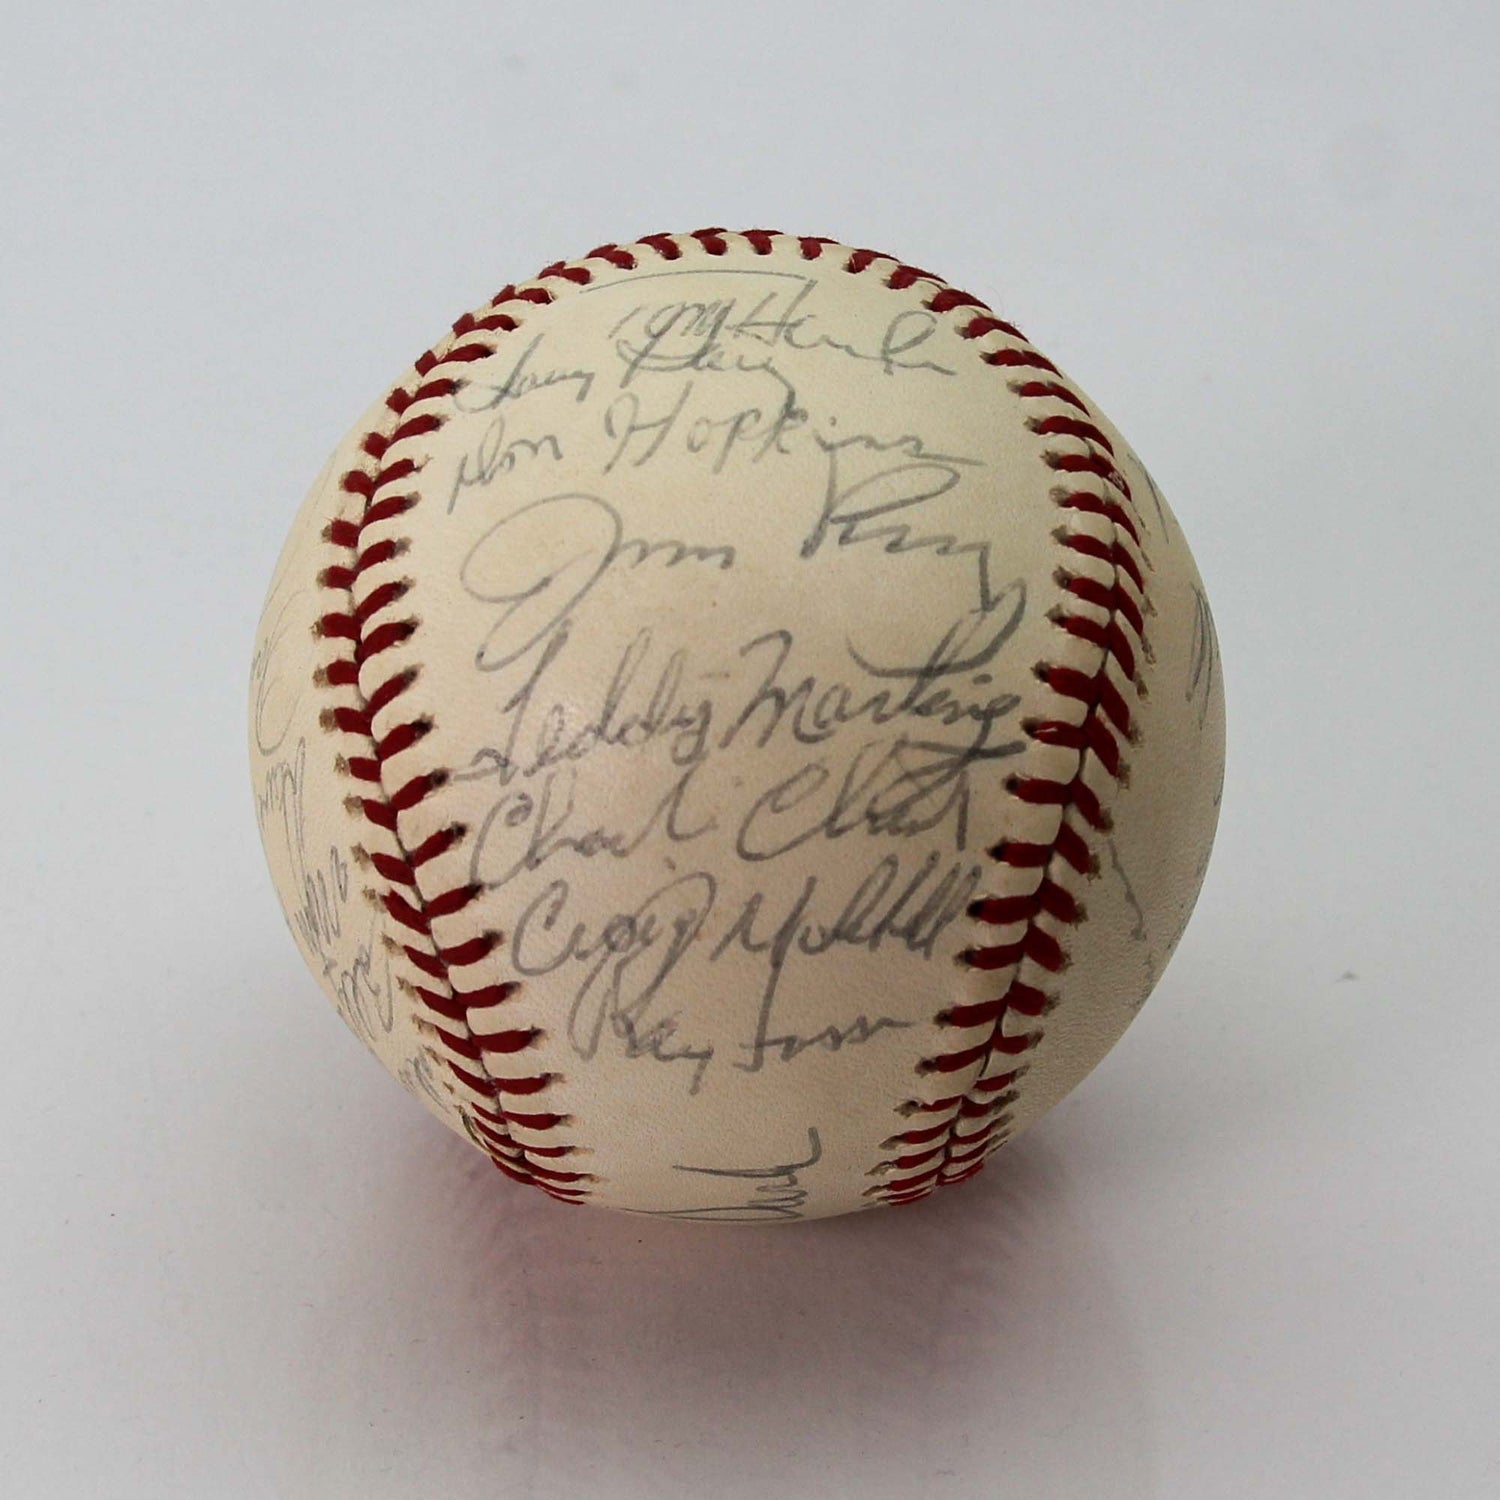 1975 American League Oakland Signed Baseball JSA Back